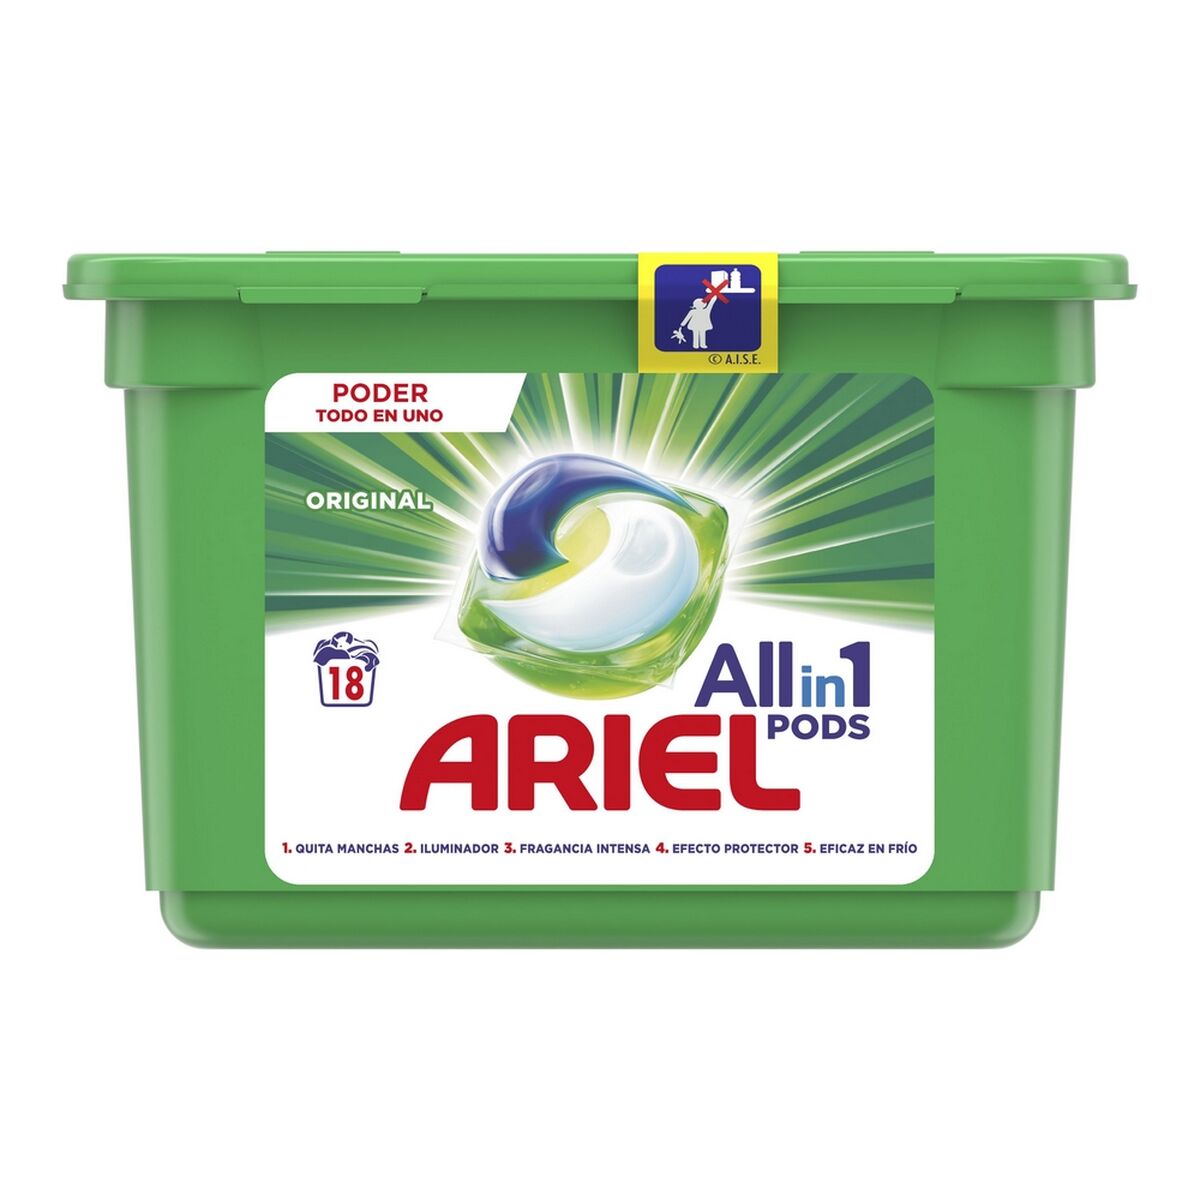 Detergent Ariel Regular (18 uds)